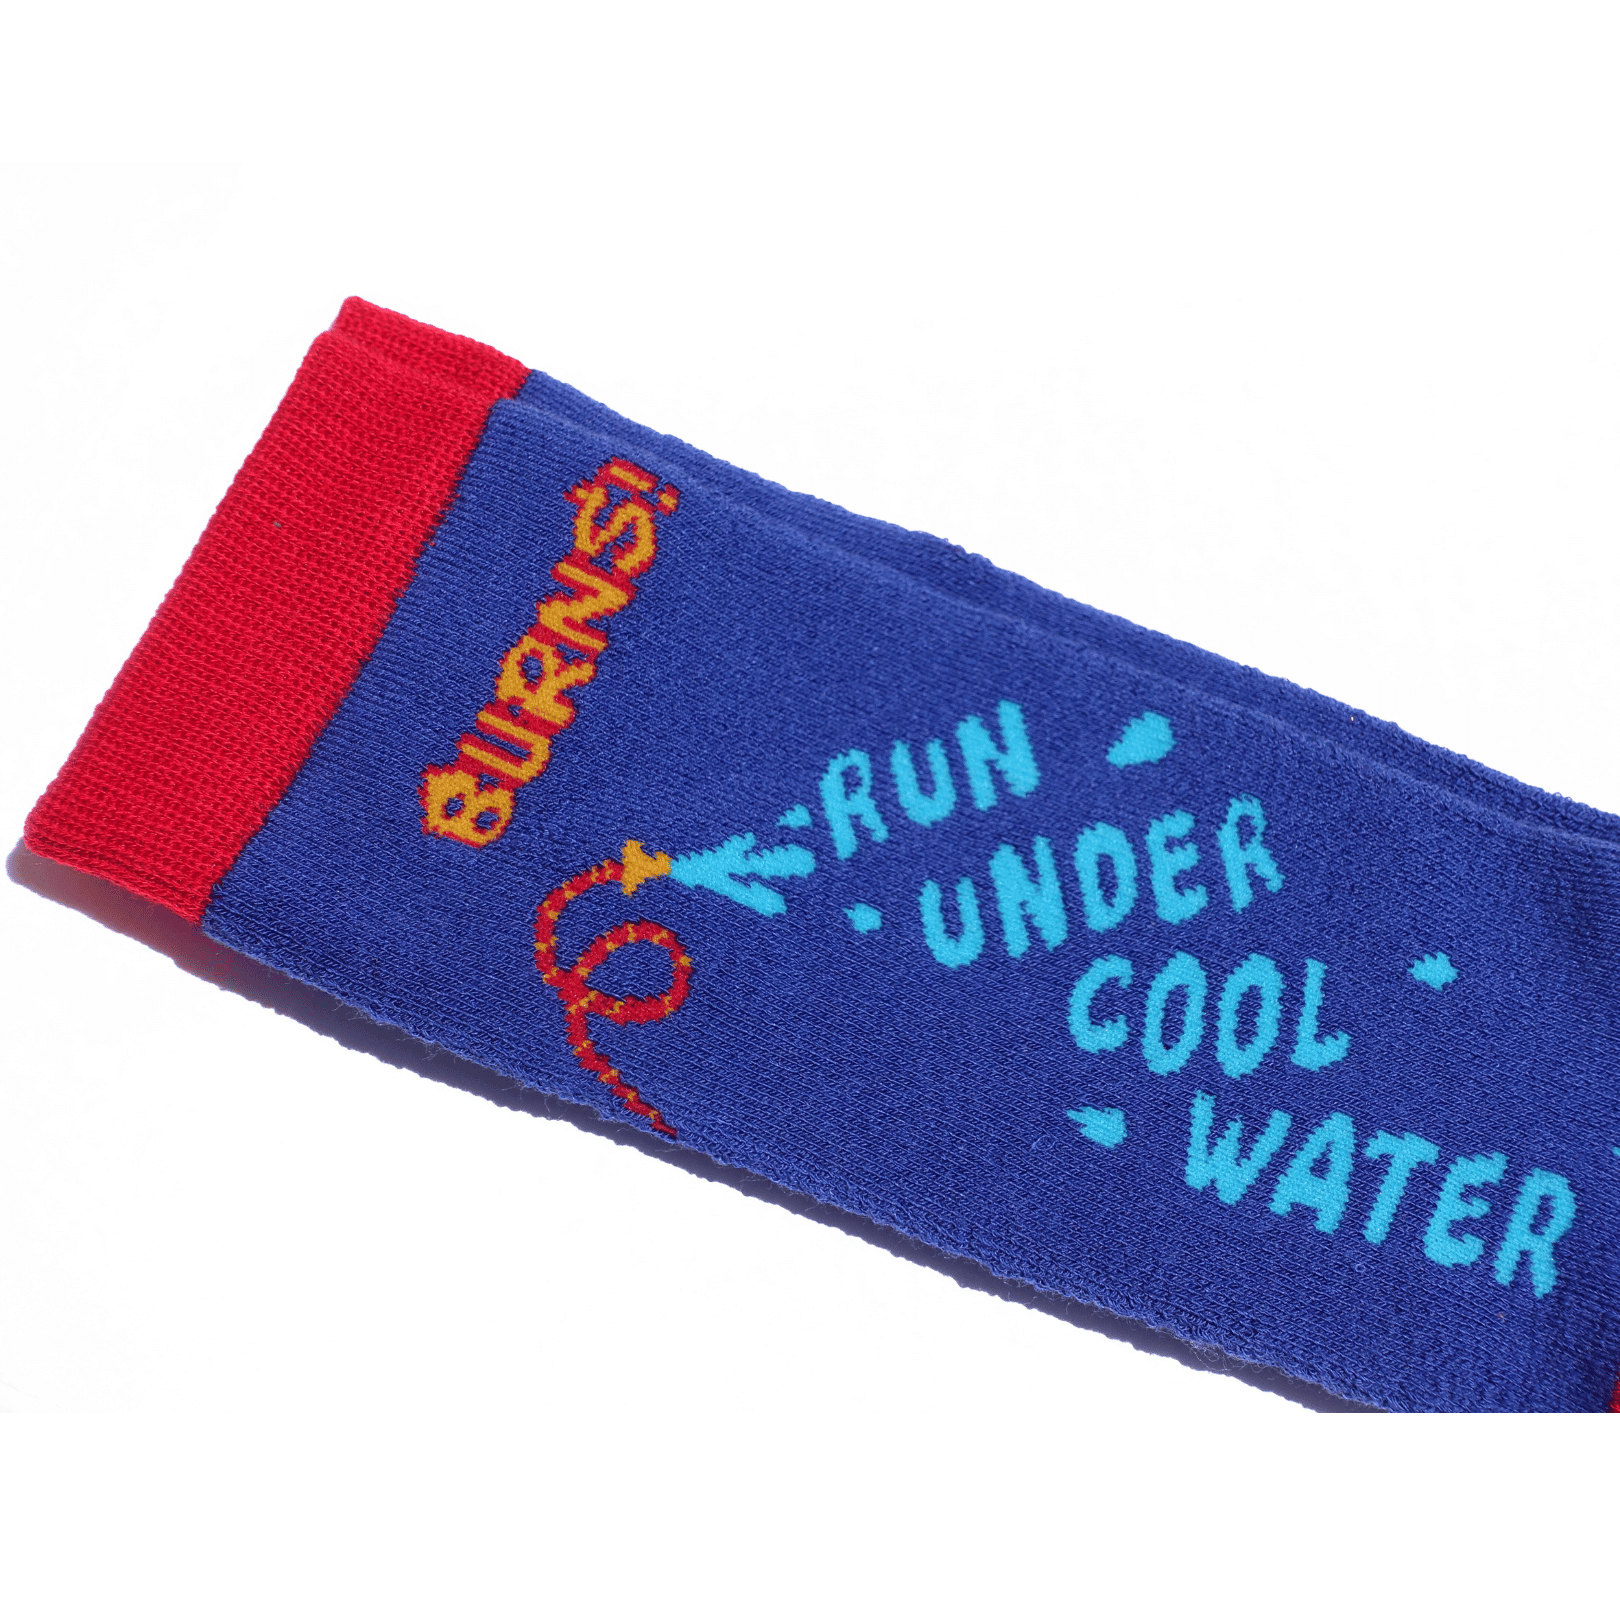 Burns Funny Grip Sock Gift Non Skid